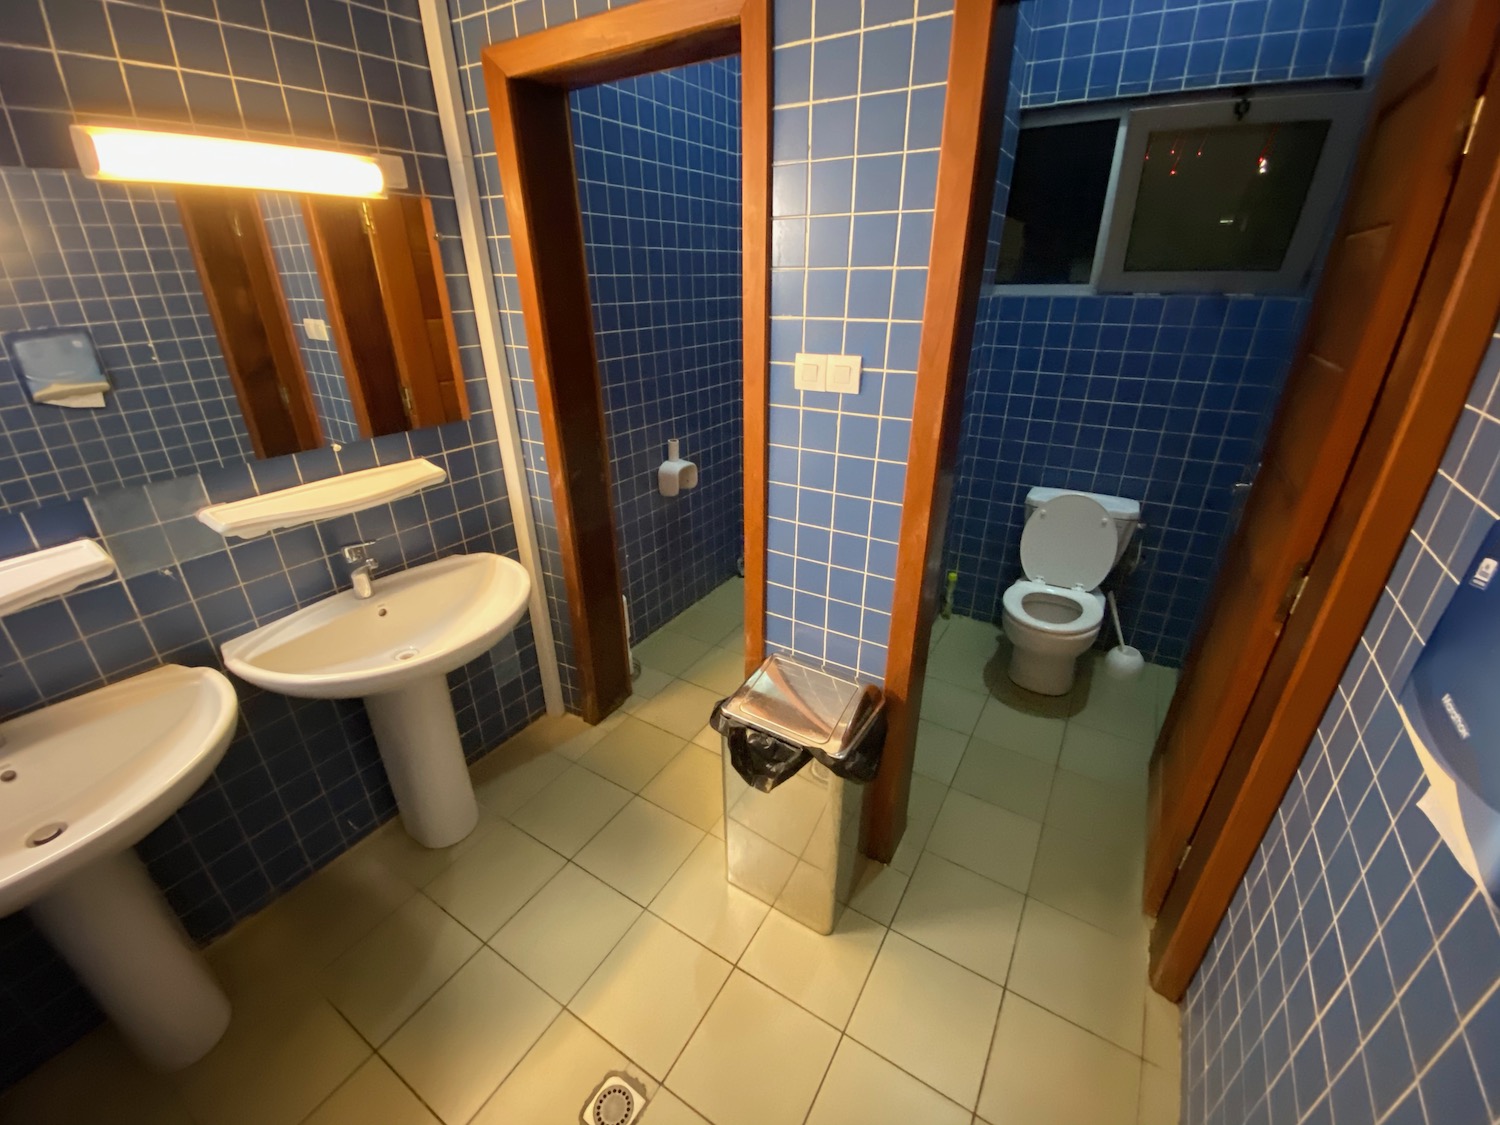 a bathroom with blue tiles